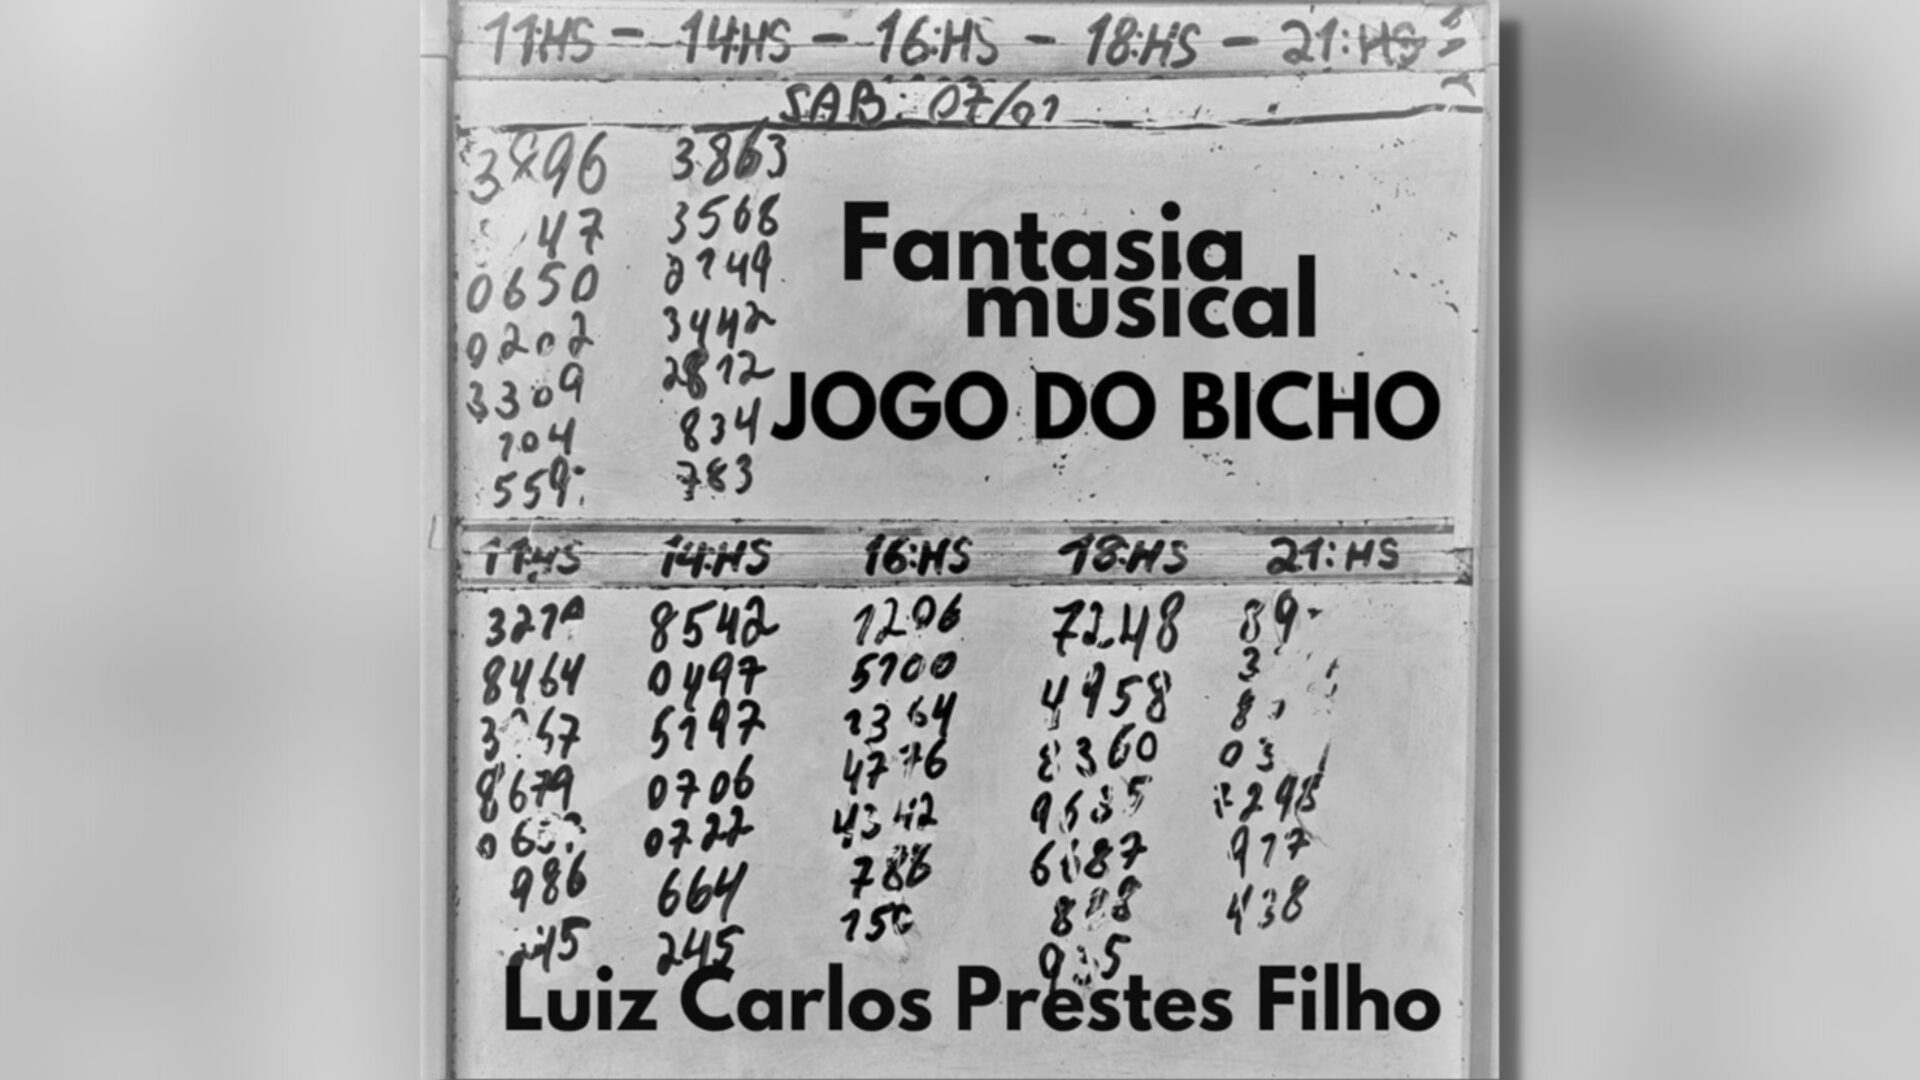 Resultado jogo do bicho sp as 13 hs - JOGO DO BICHO